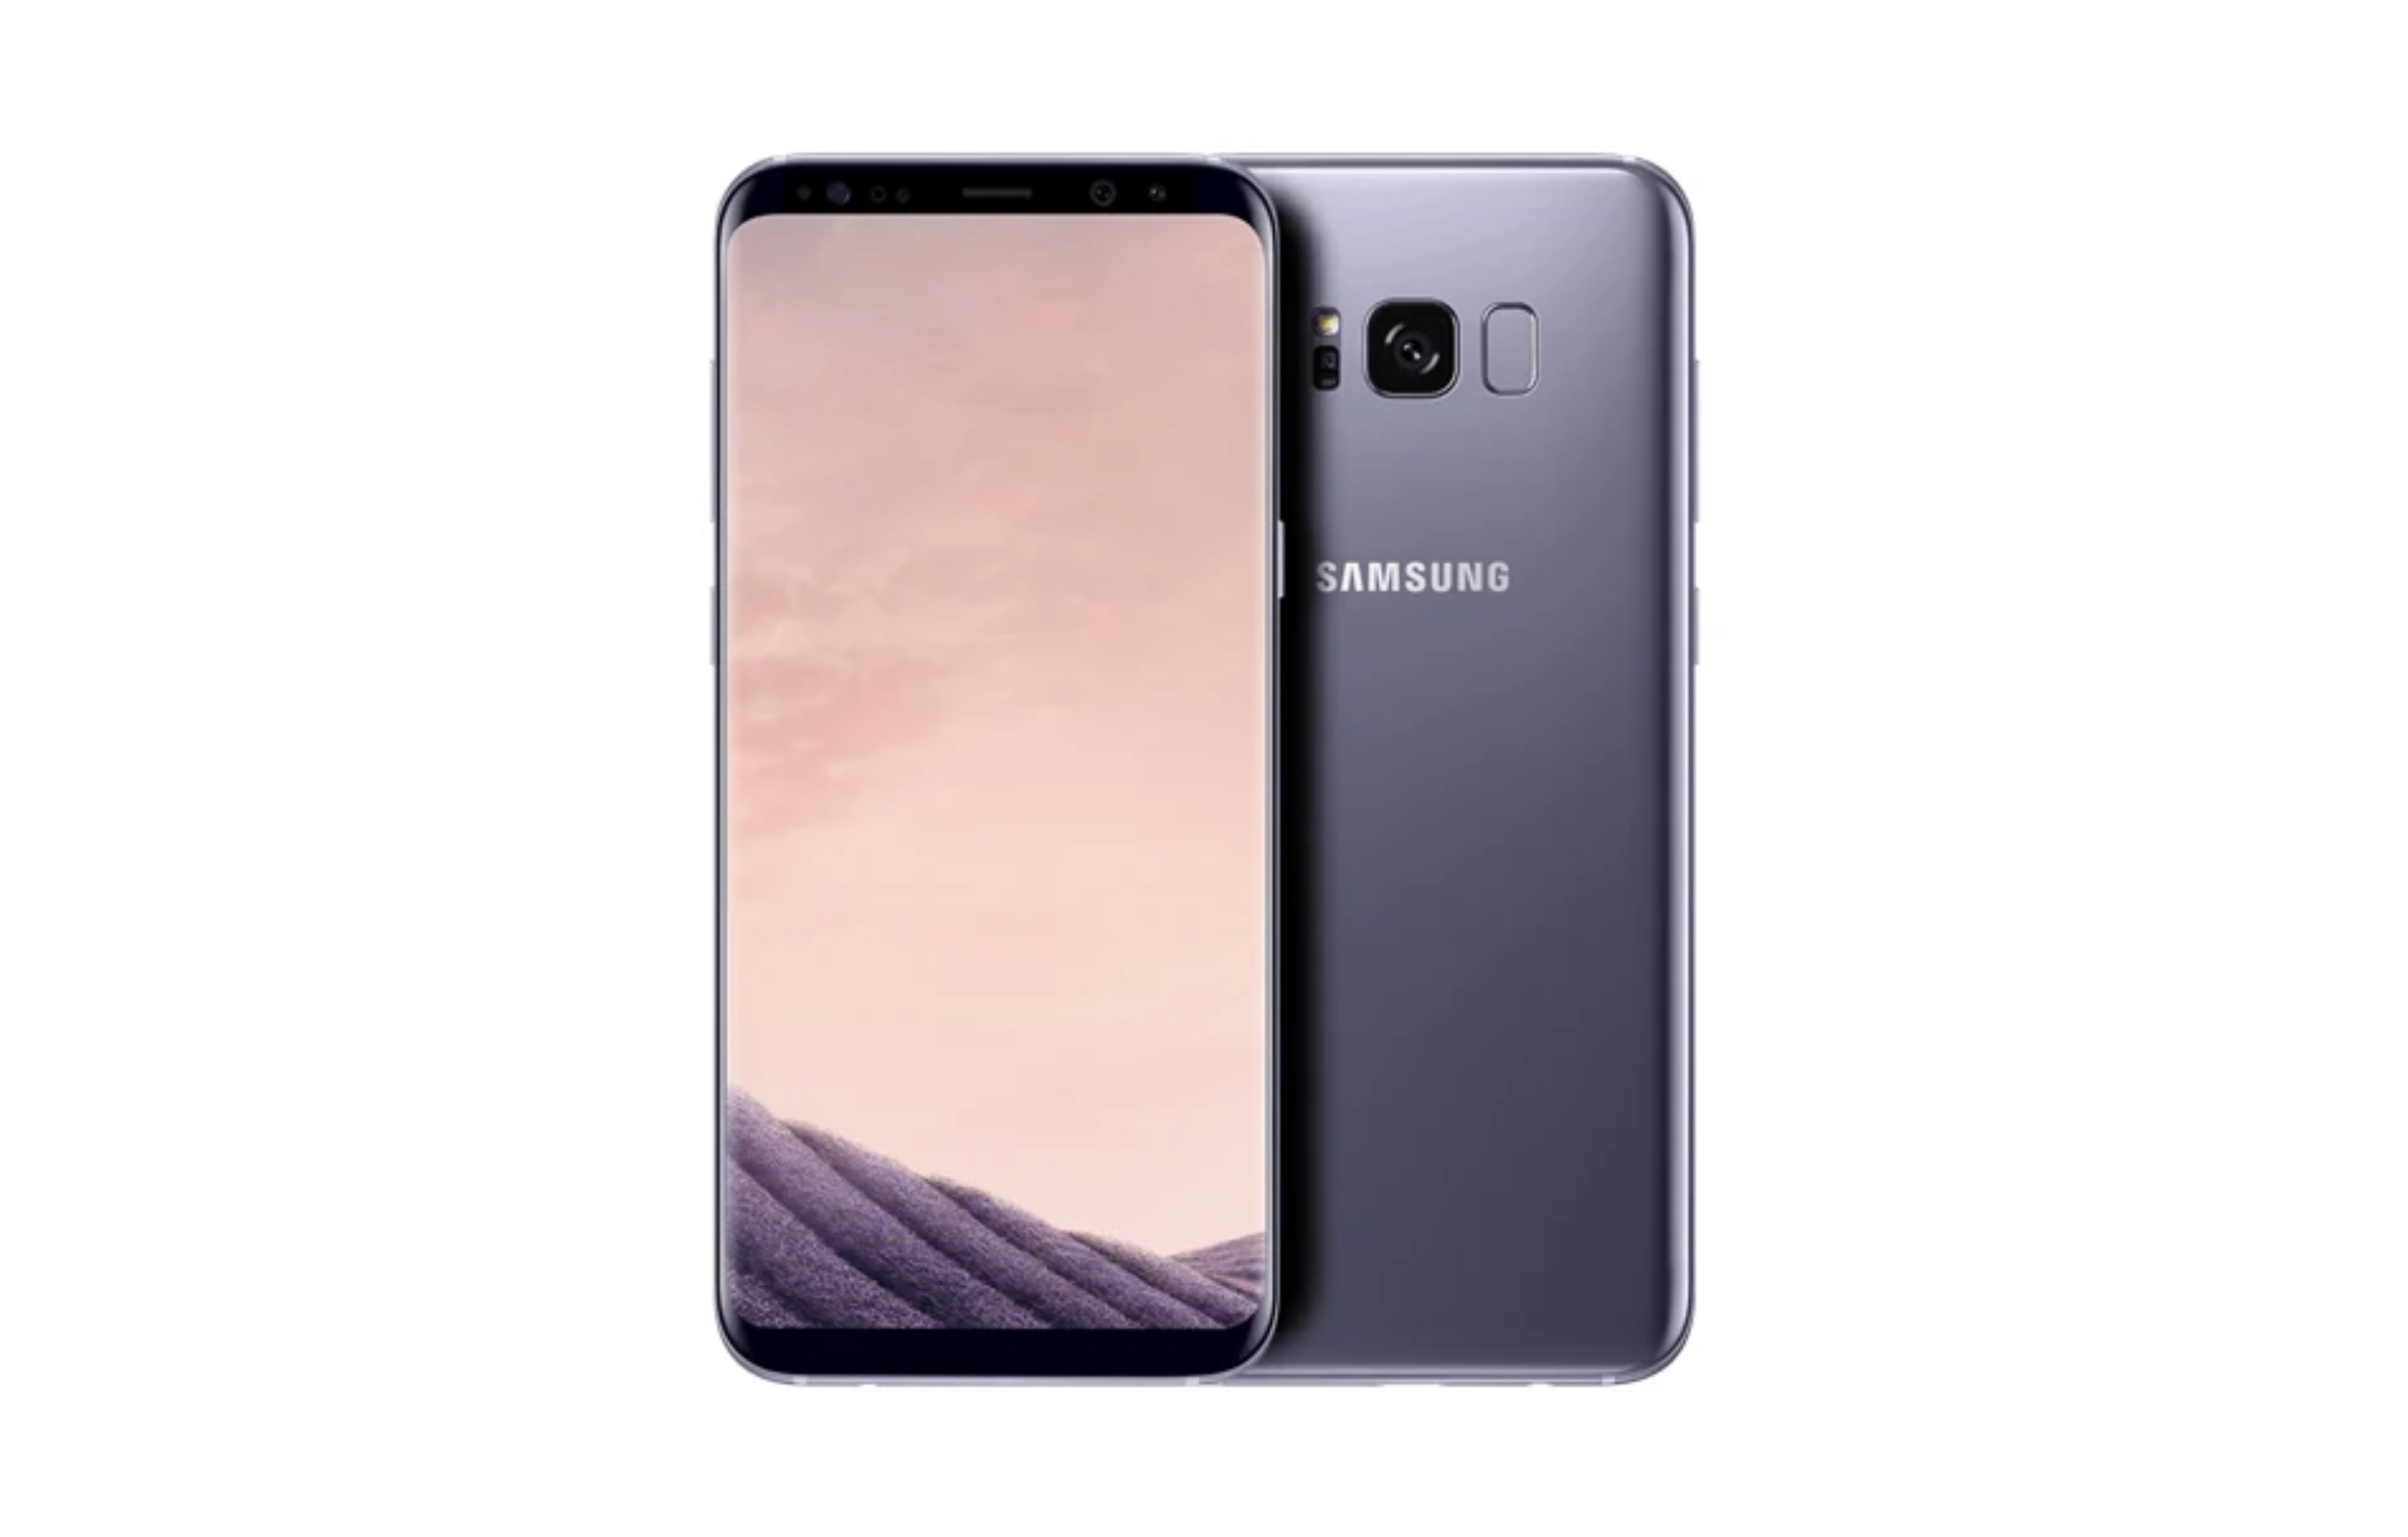 Samsung G950 Galaxy S8 64gb